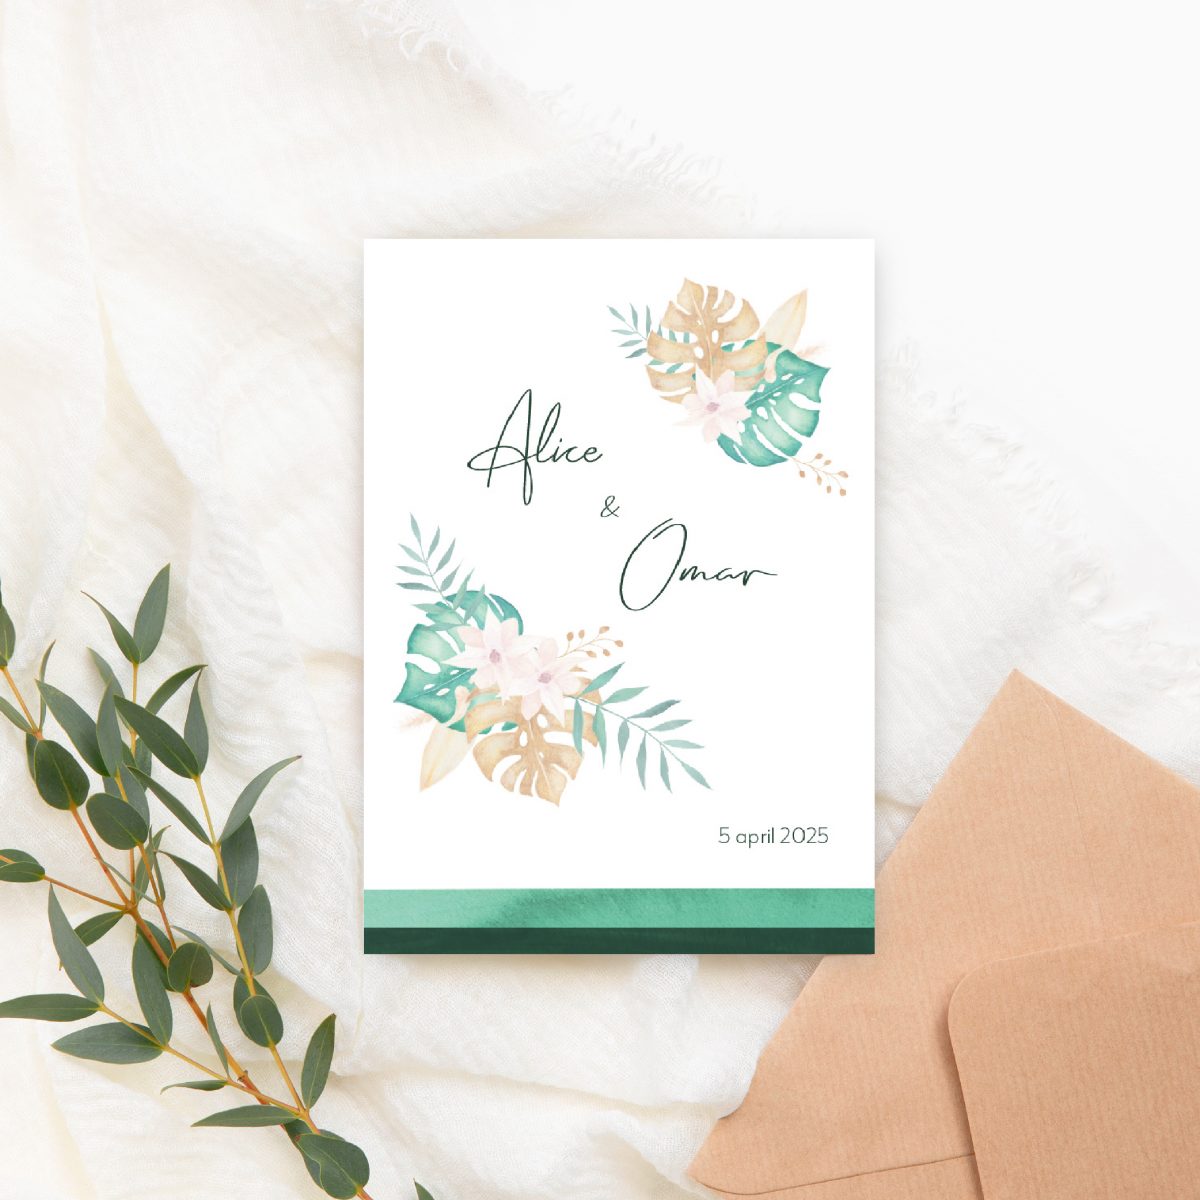 Tropische trouwkaart met aquarel illustraties van bloemen en planten